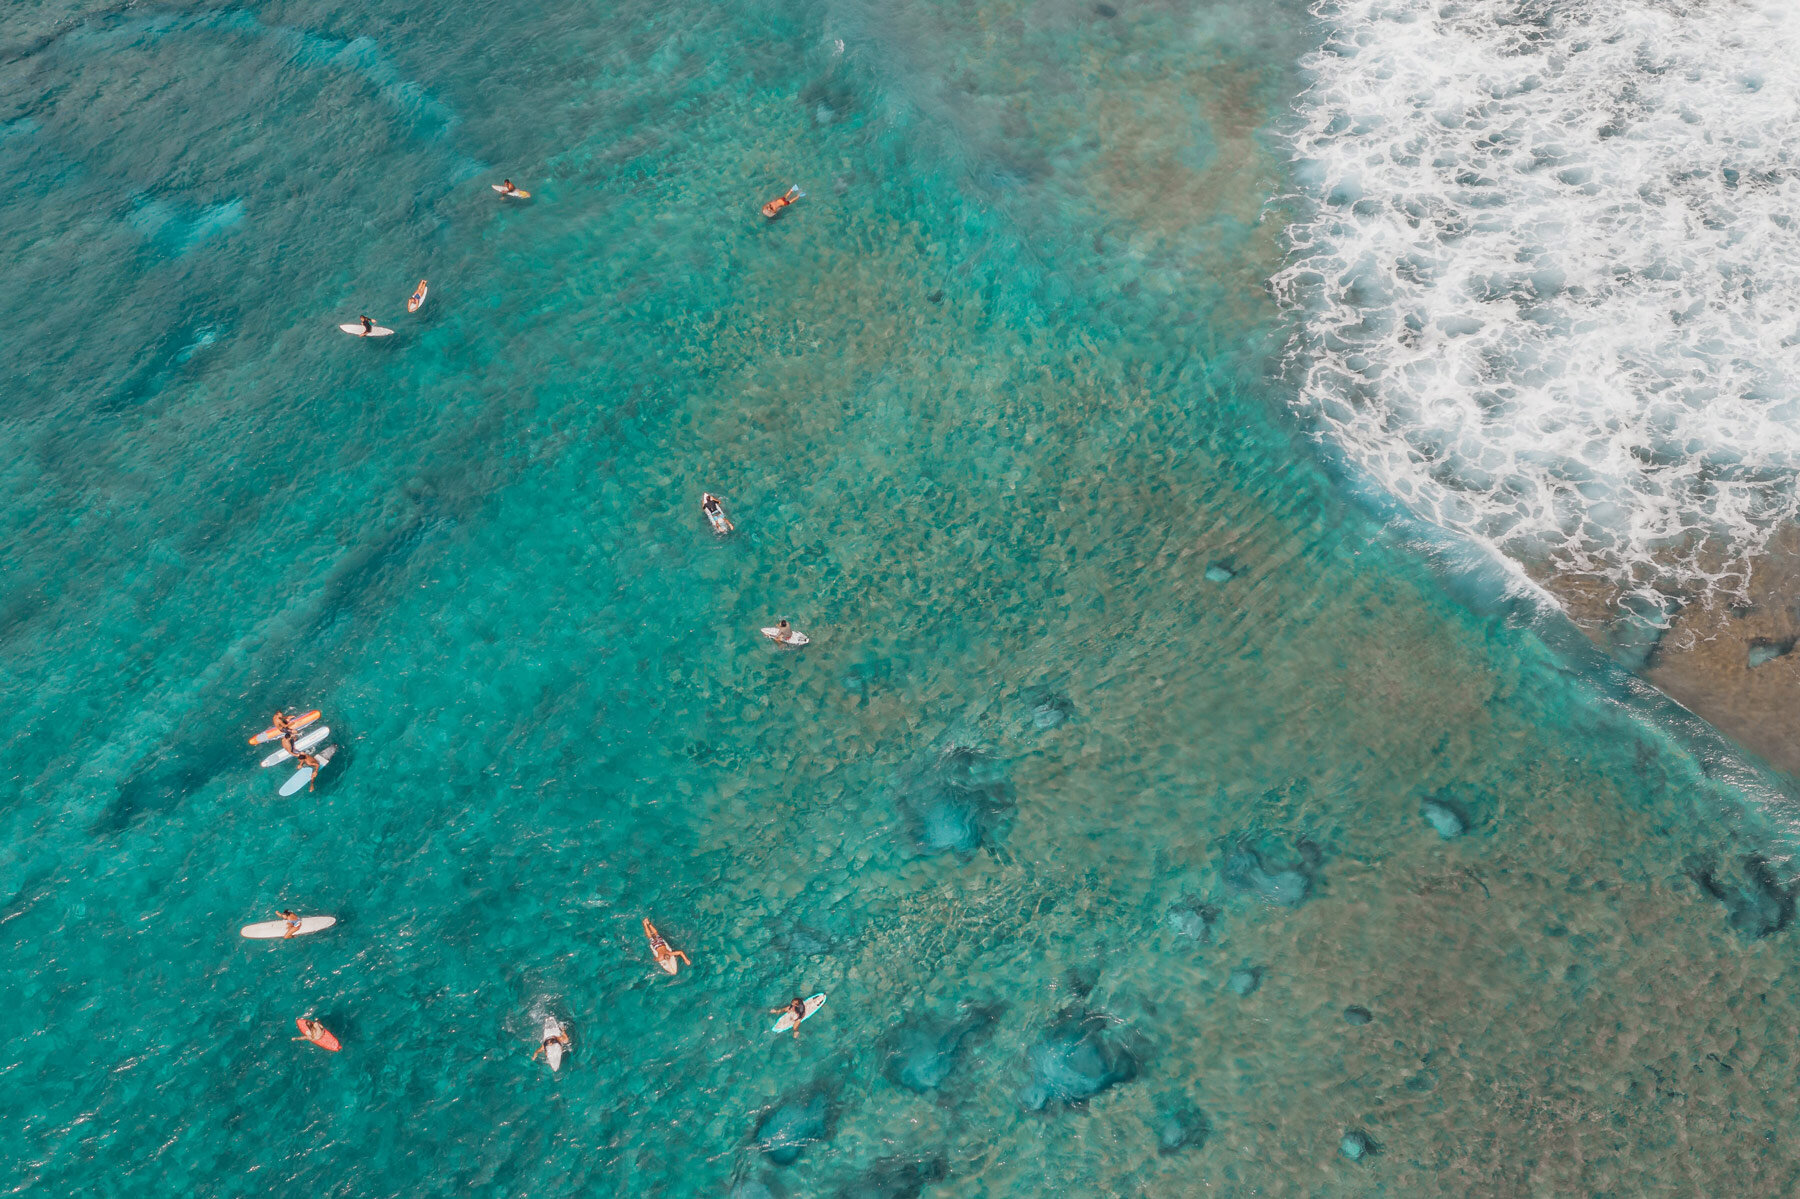 group of surfers in ocean